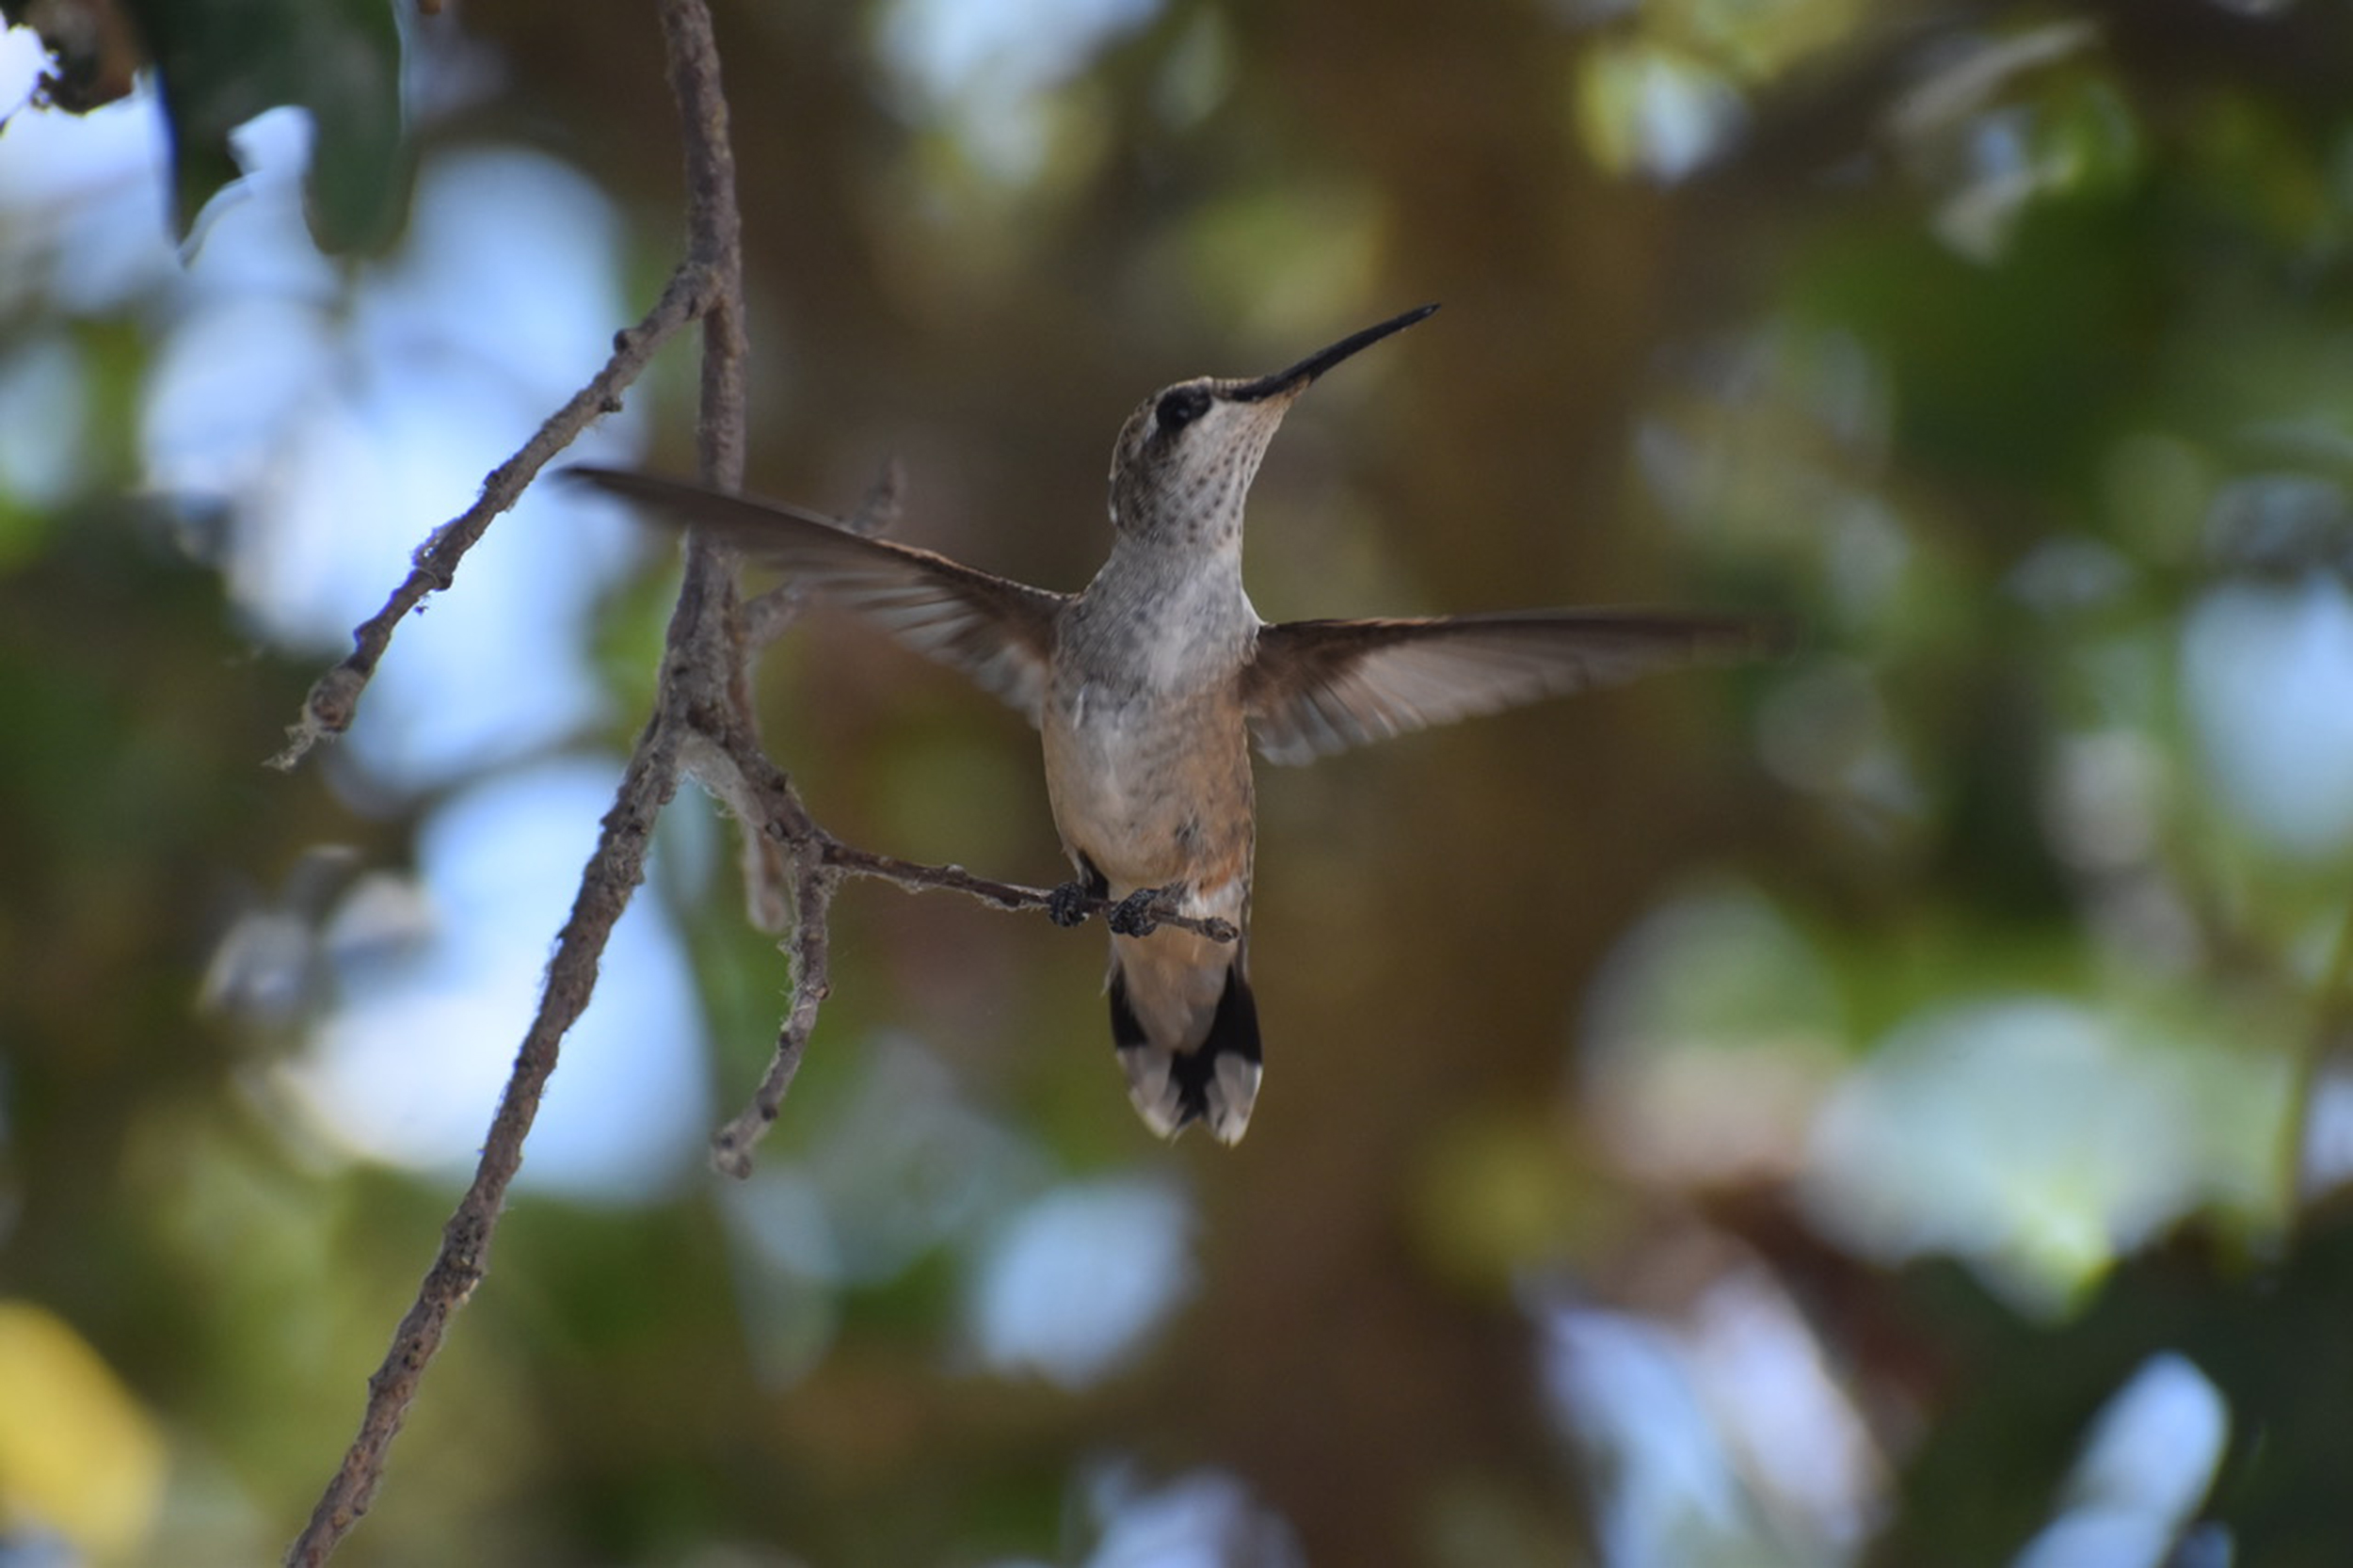 Close-up of a Hummingbird